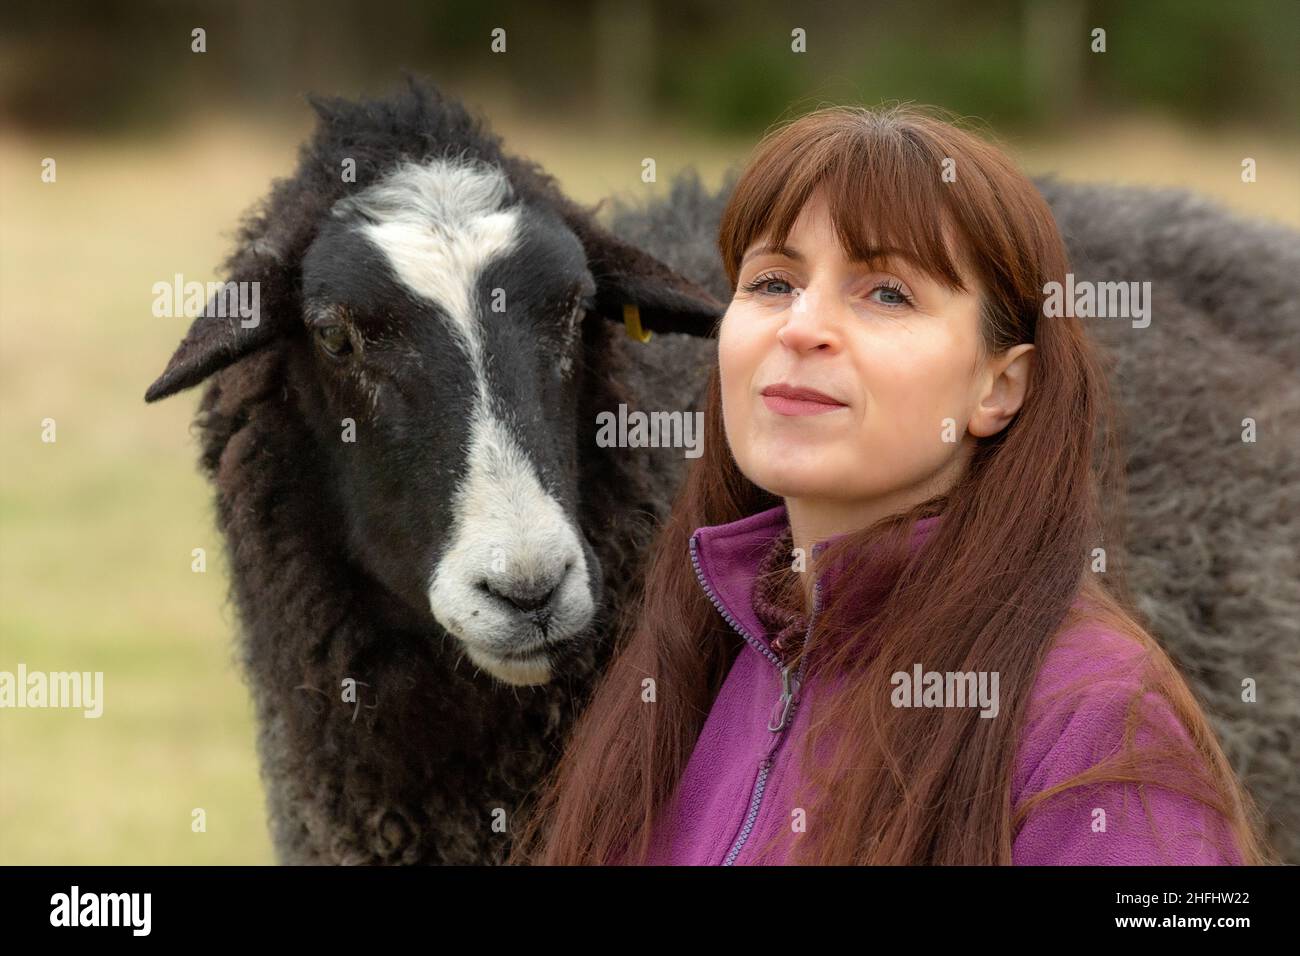 La Pastora Vegana. Imágenes de una mujer en el norte de Escocia que cuida de un pequeño rebaño de ovejas, muchas de las cuales tienen problemas de edad y salud. Foto de stock